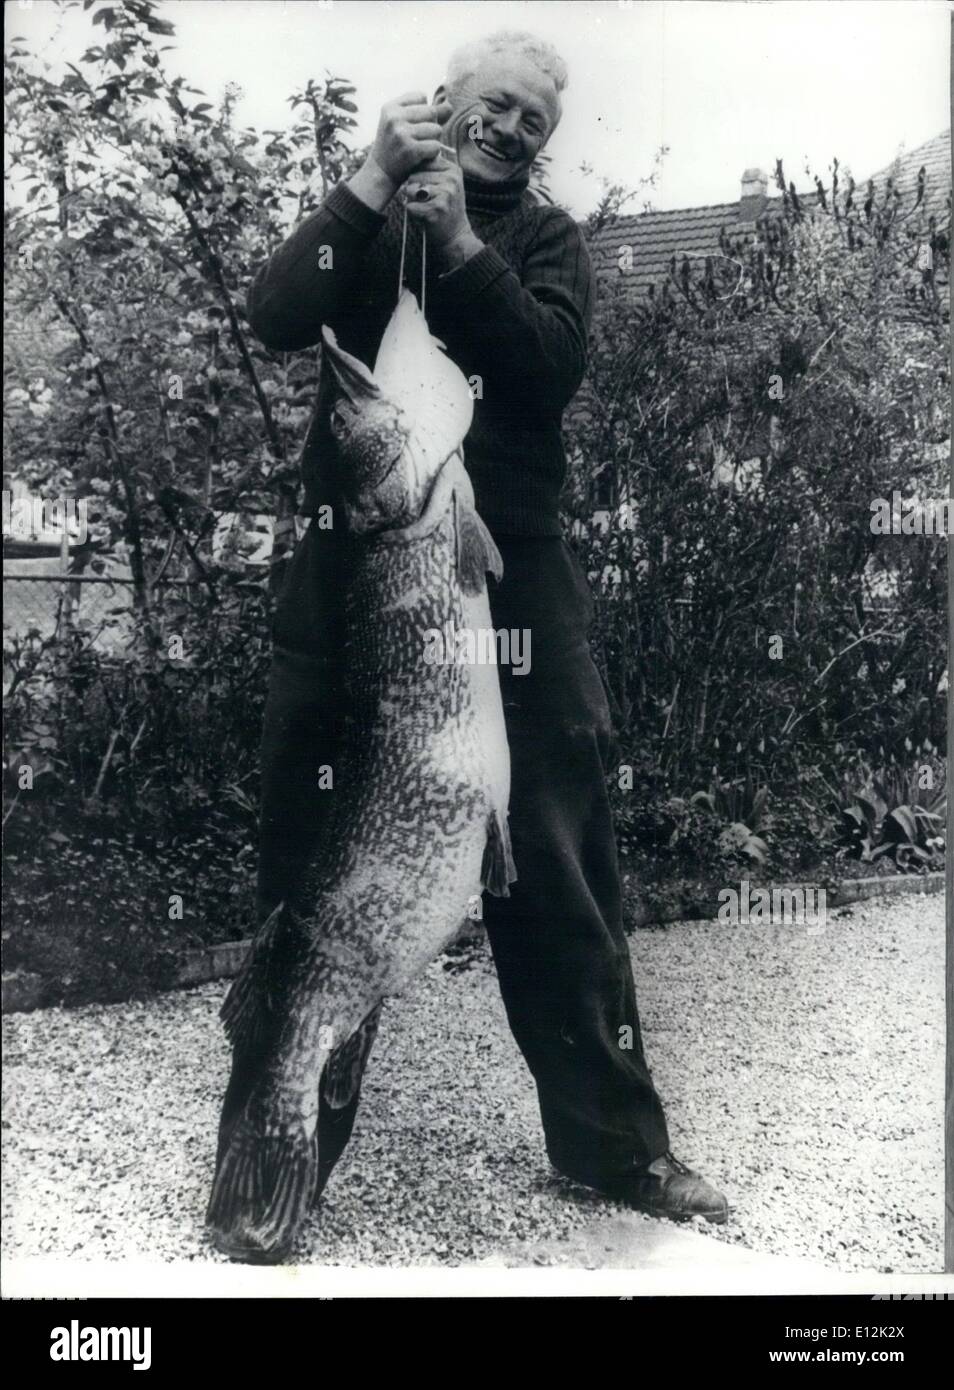 24. Februar 2012 - jemals größte Hecht gefangen, in der Schweiz: Fischer Emil Blattner von Ermatingen, in der Nähe von Zürich, fing diesen Hecht mit einem Gewicht von 43 Pfund die könnte in See Kenstanz und etwa 17 Jahre alt war. Stockfoto